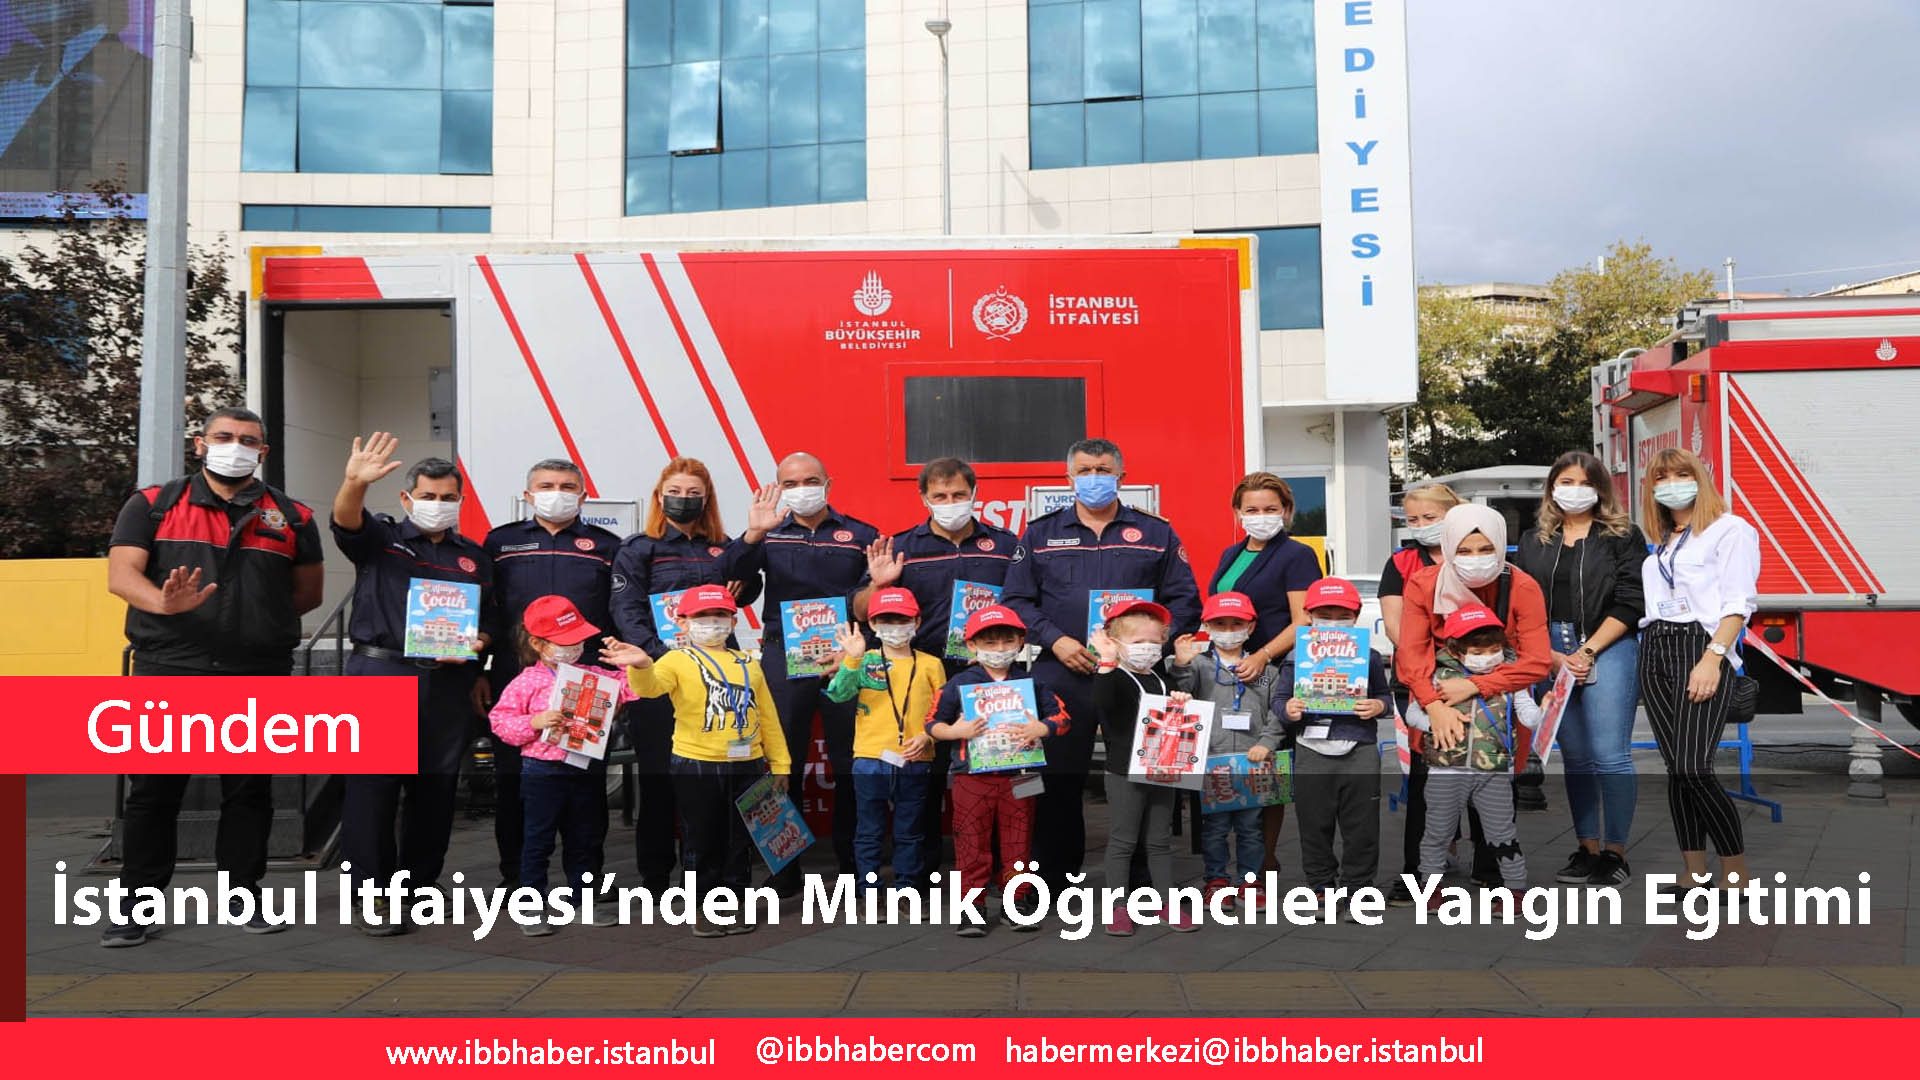 İstanbul İtfaiyesi’nden Kartallı Minik Öğrencilere Yangın Eğitimi